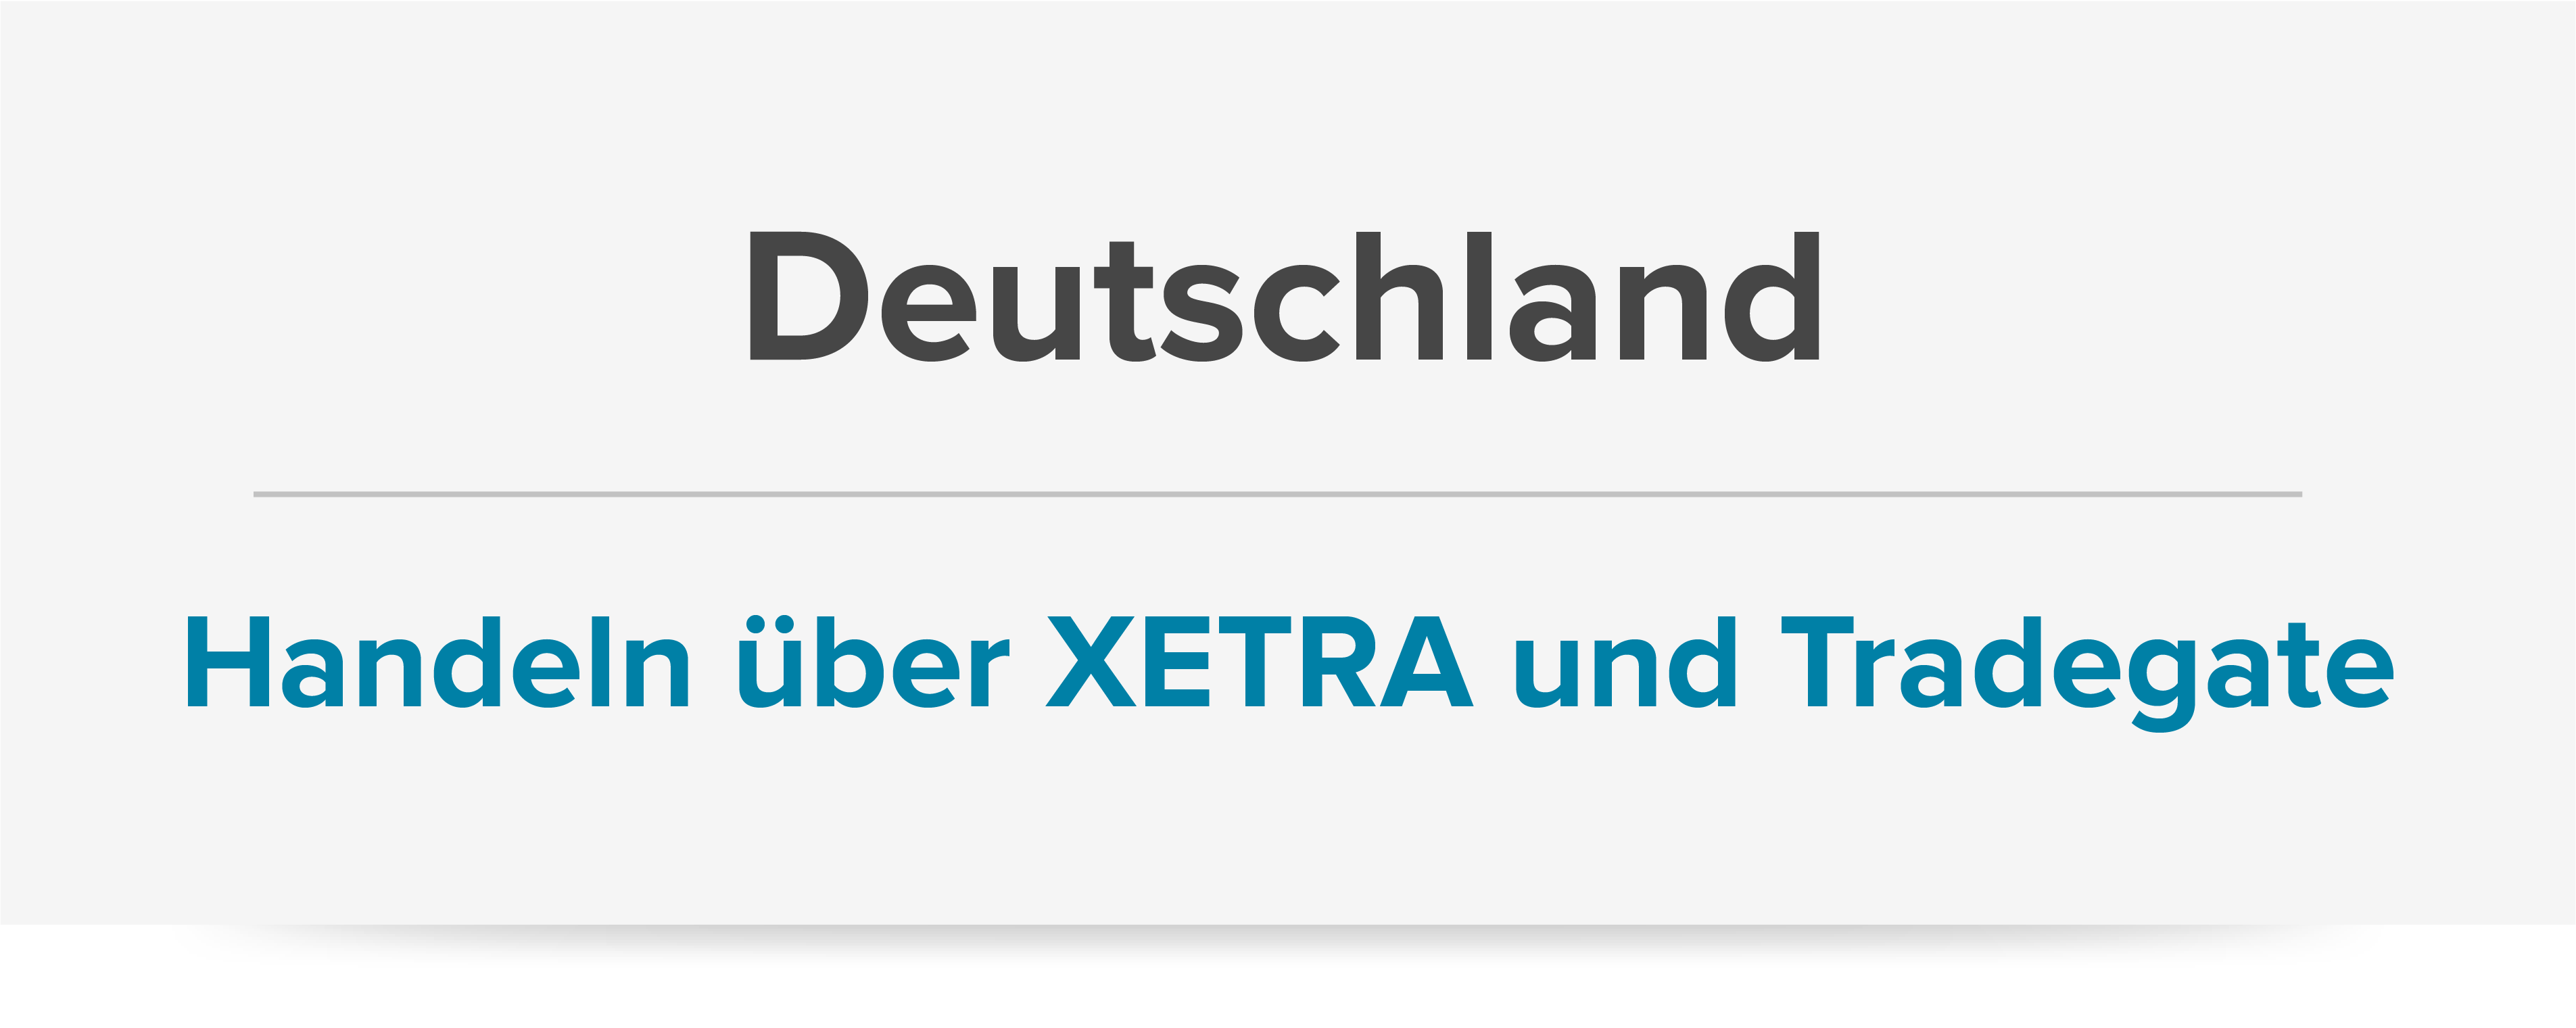 Deutschland Handeln über XETRA und Tradegate